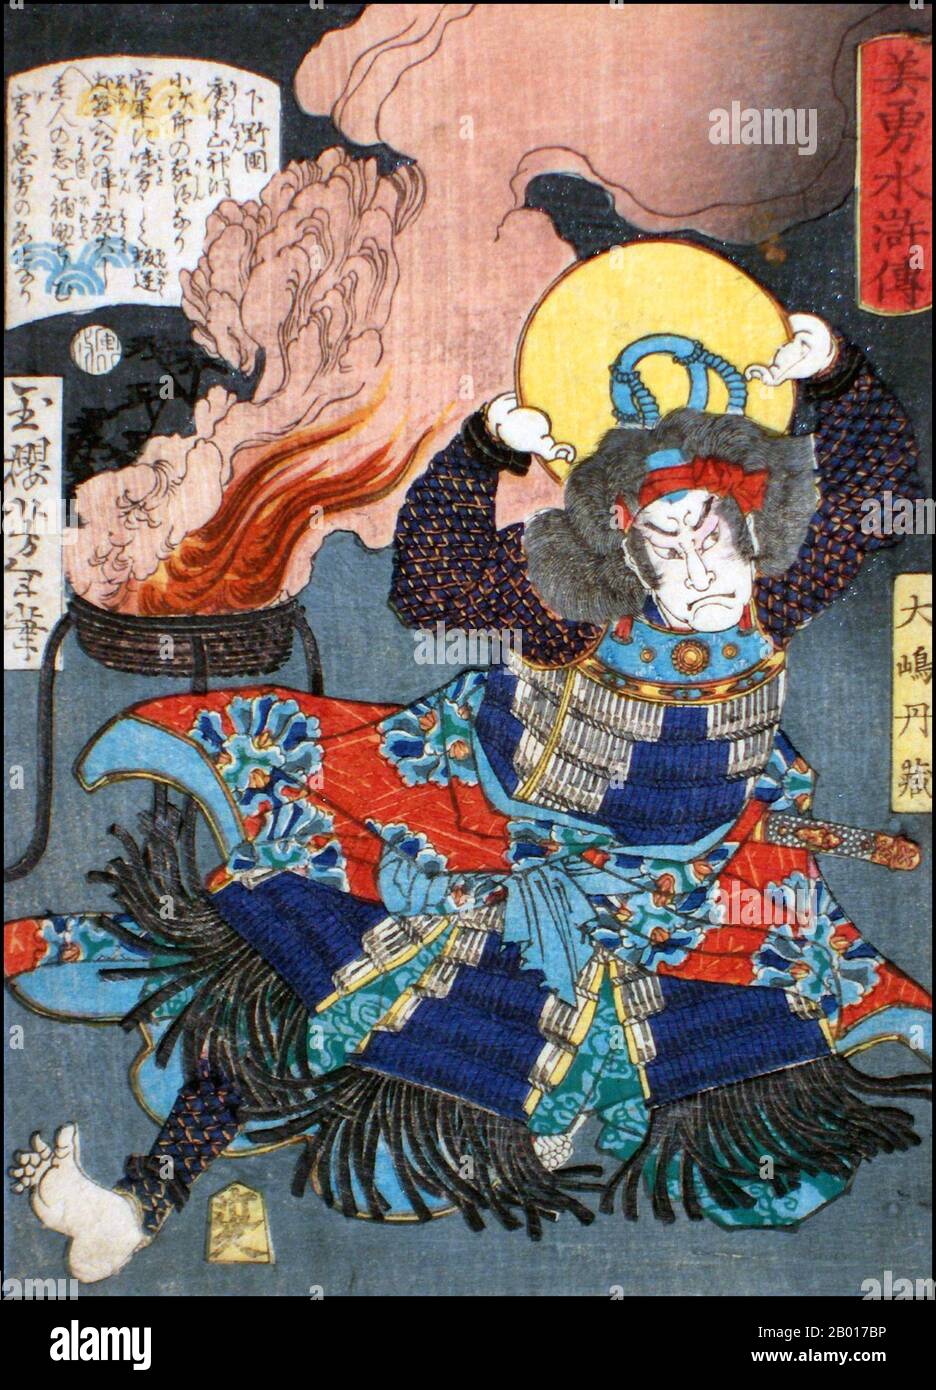 Giappone: 'Il Bandit Chieftain Oshima Tanzo'. Ukiyo-e stampa di blocco di legno dalla serie 'Eroi del margine d'acqua' di Tsukioka Yoshitoshi (1839 - 9 giugno 1892), 1866. Tsukioka Yoshitoshi, anche chiamato Taiso Yoshitoshi, era un artista giapponese. È ampiamente riconosciuto come l'ultimo grande maestro di Ukiyo-e, un tipo di stampa giapponese a blocchi di legno. È inoltre considerato uno dei più grandi innovatori della forma. La sua carriera ha abbracciato due epoche – gli ultimi anni del Giappone feudale, e i primi anni del Giappone moderno dopo la Restaurazione Meiji. Foto Stock